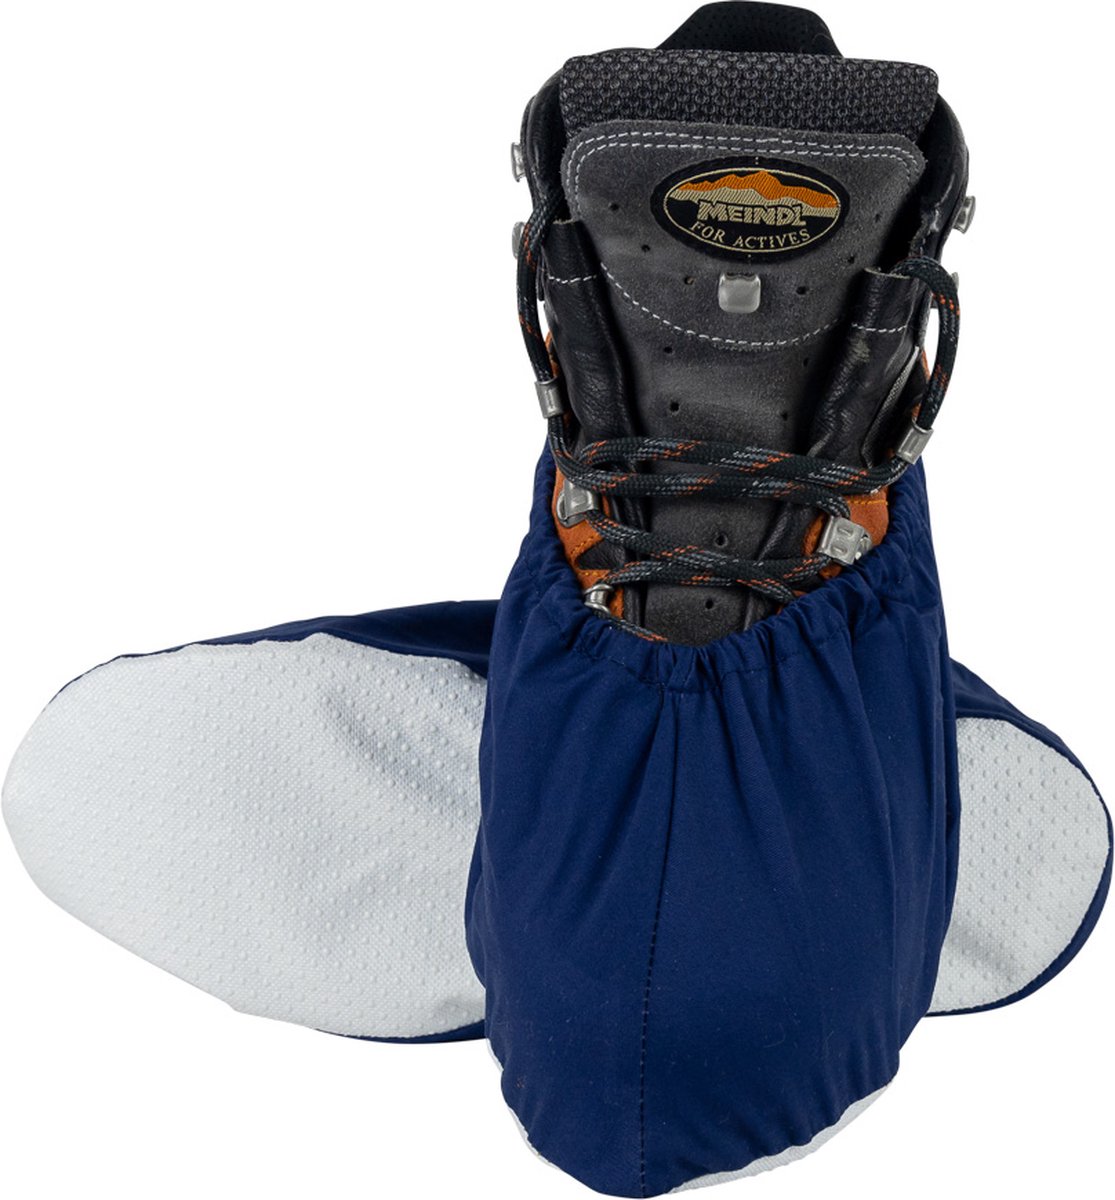 Premium Overschoenen - met Witte Zool - Antislip - Maat 40-45 - Marine Blauw - Wasbaar - Duurzaam - Schoenovertrekken - schoenhoesjes